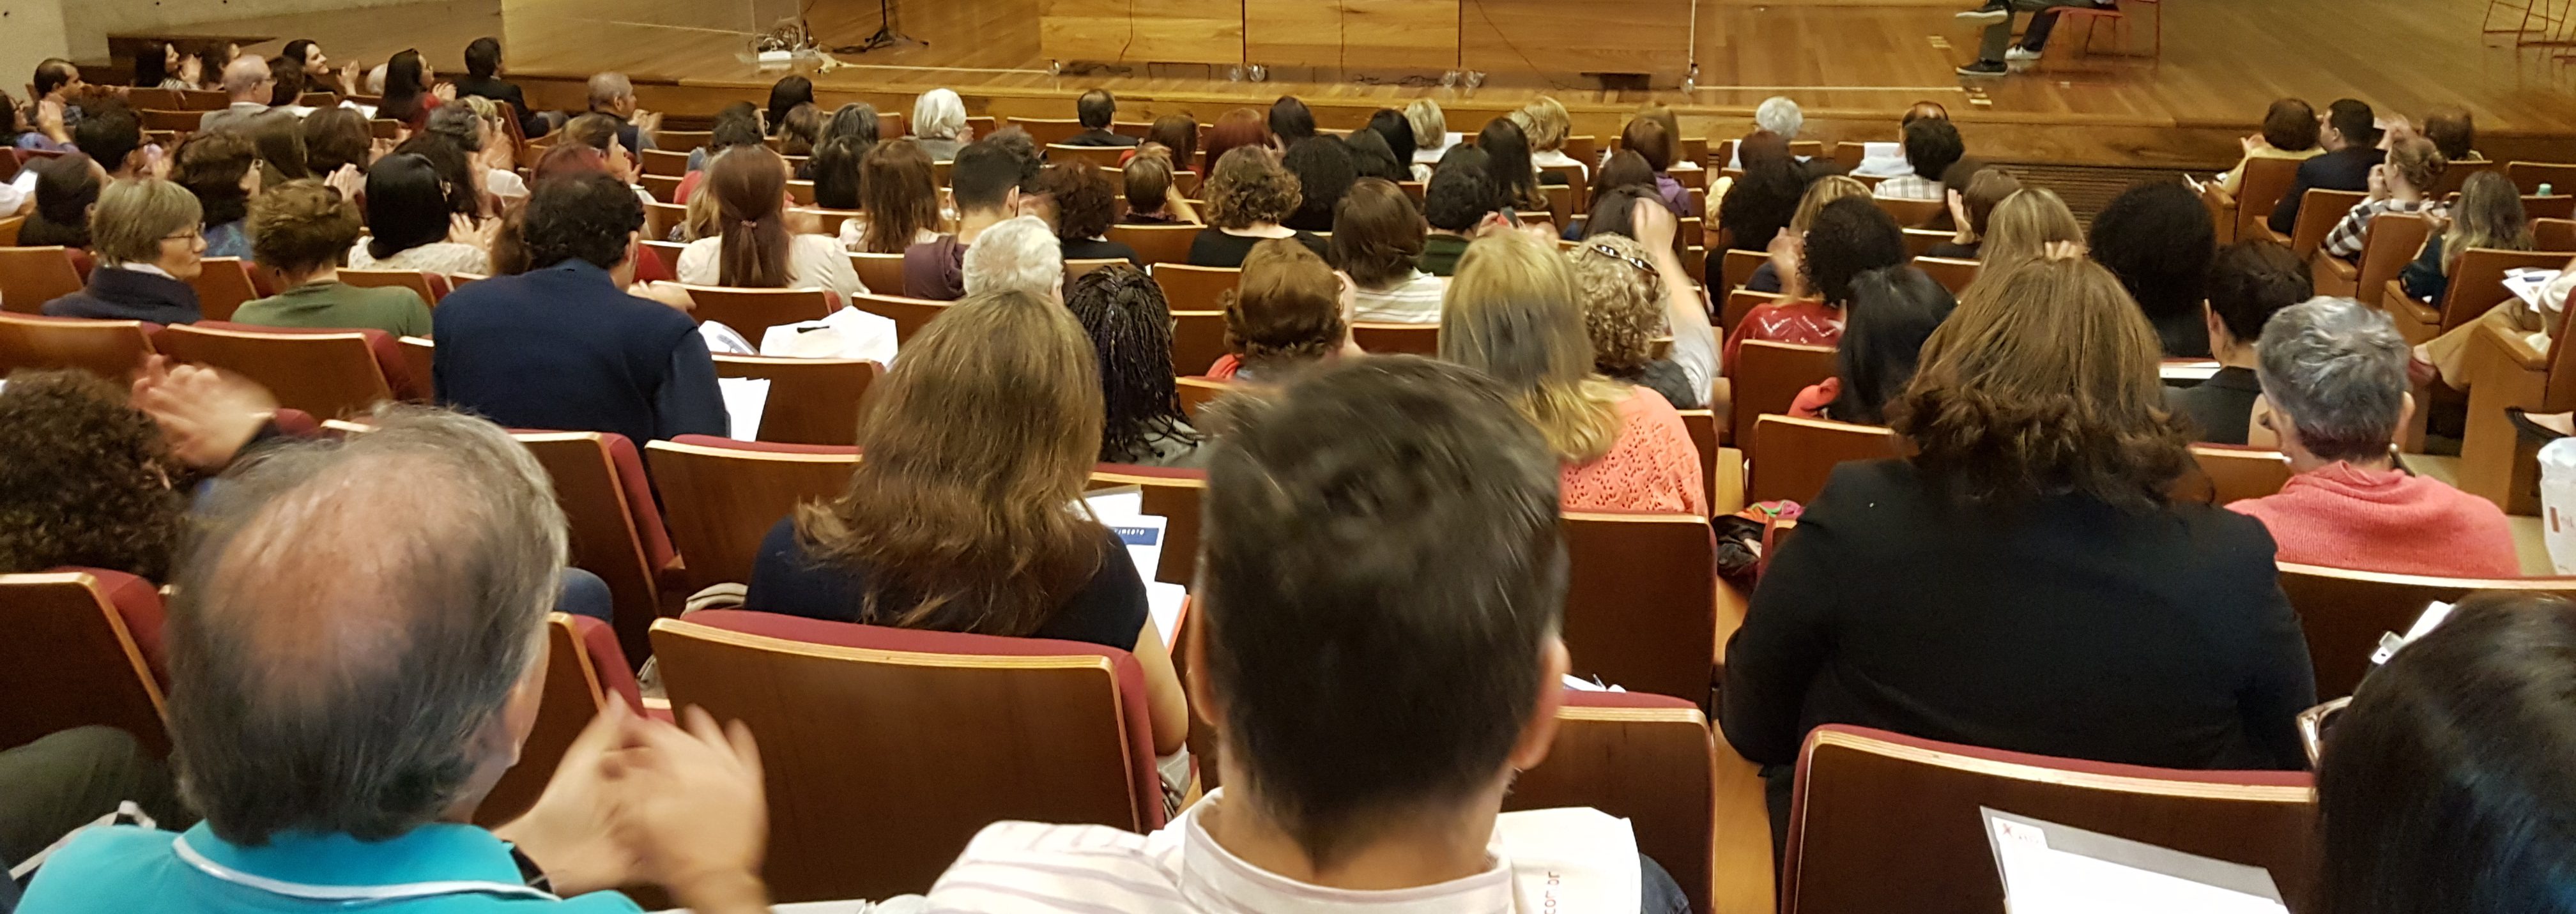 Público heterogêneo em auditório lotado marca evento da USP sobre envelhecimento ativo